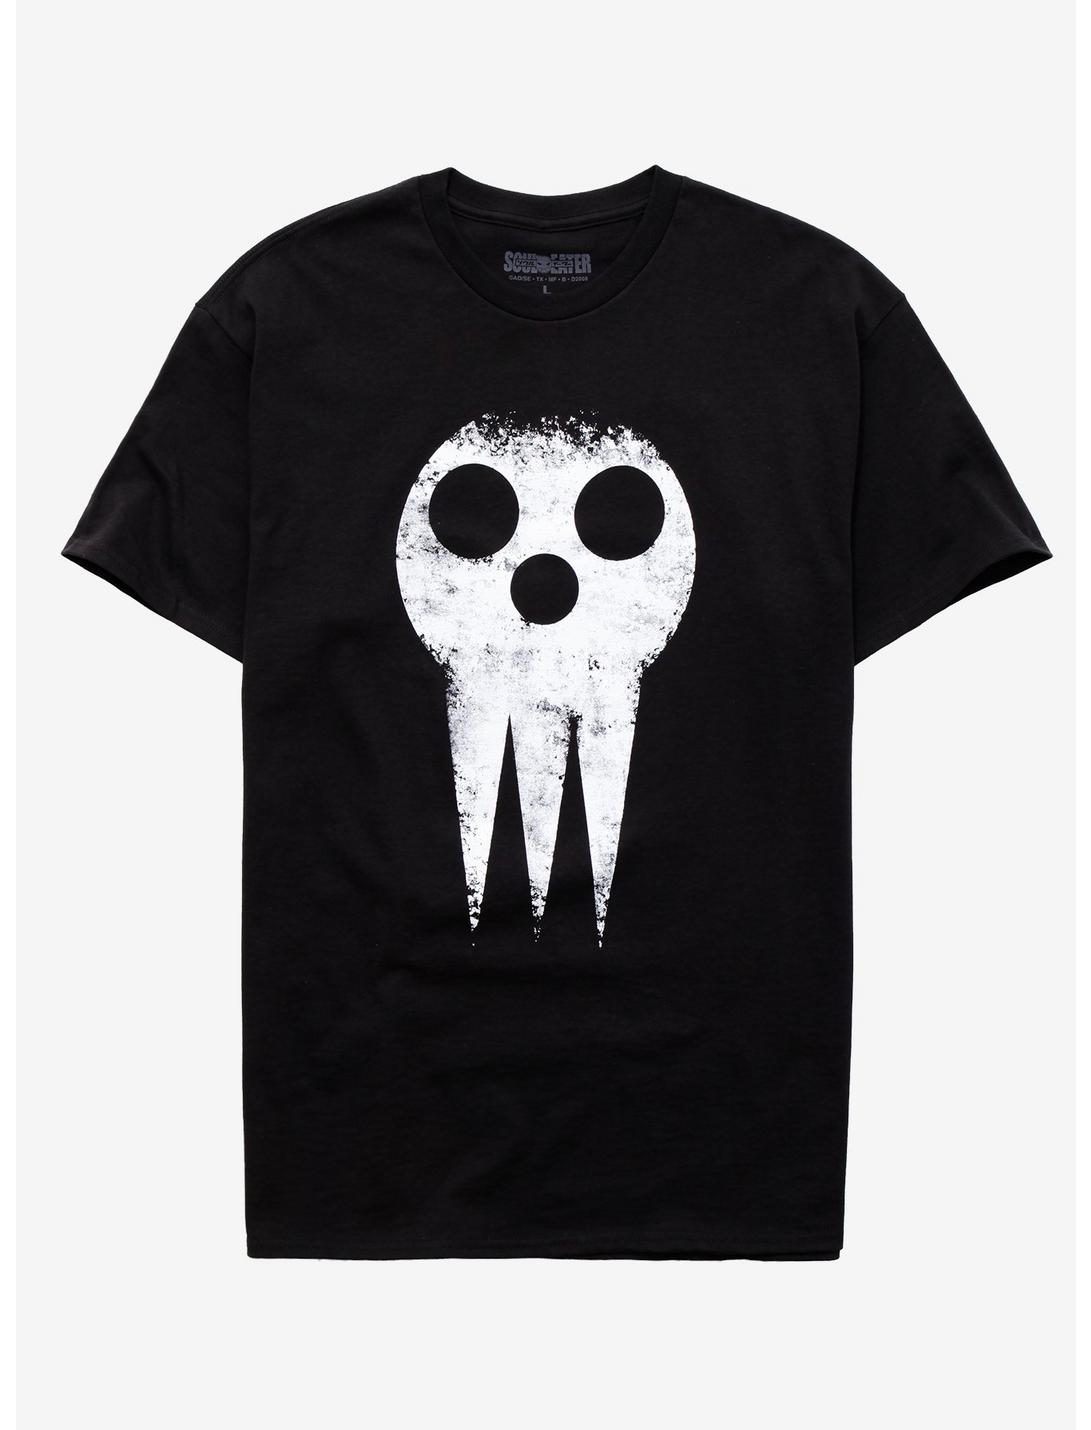 Soul Eater Death Distressed Mask T-Shirt, BLACK, hi-res